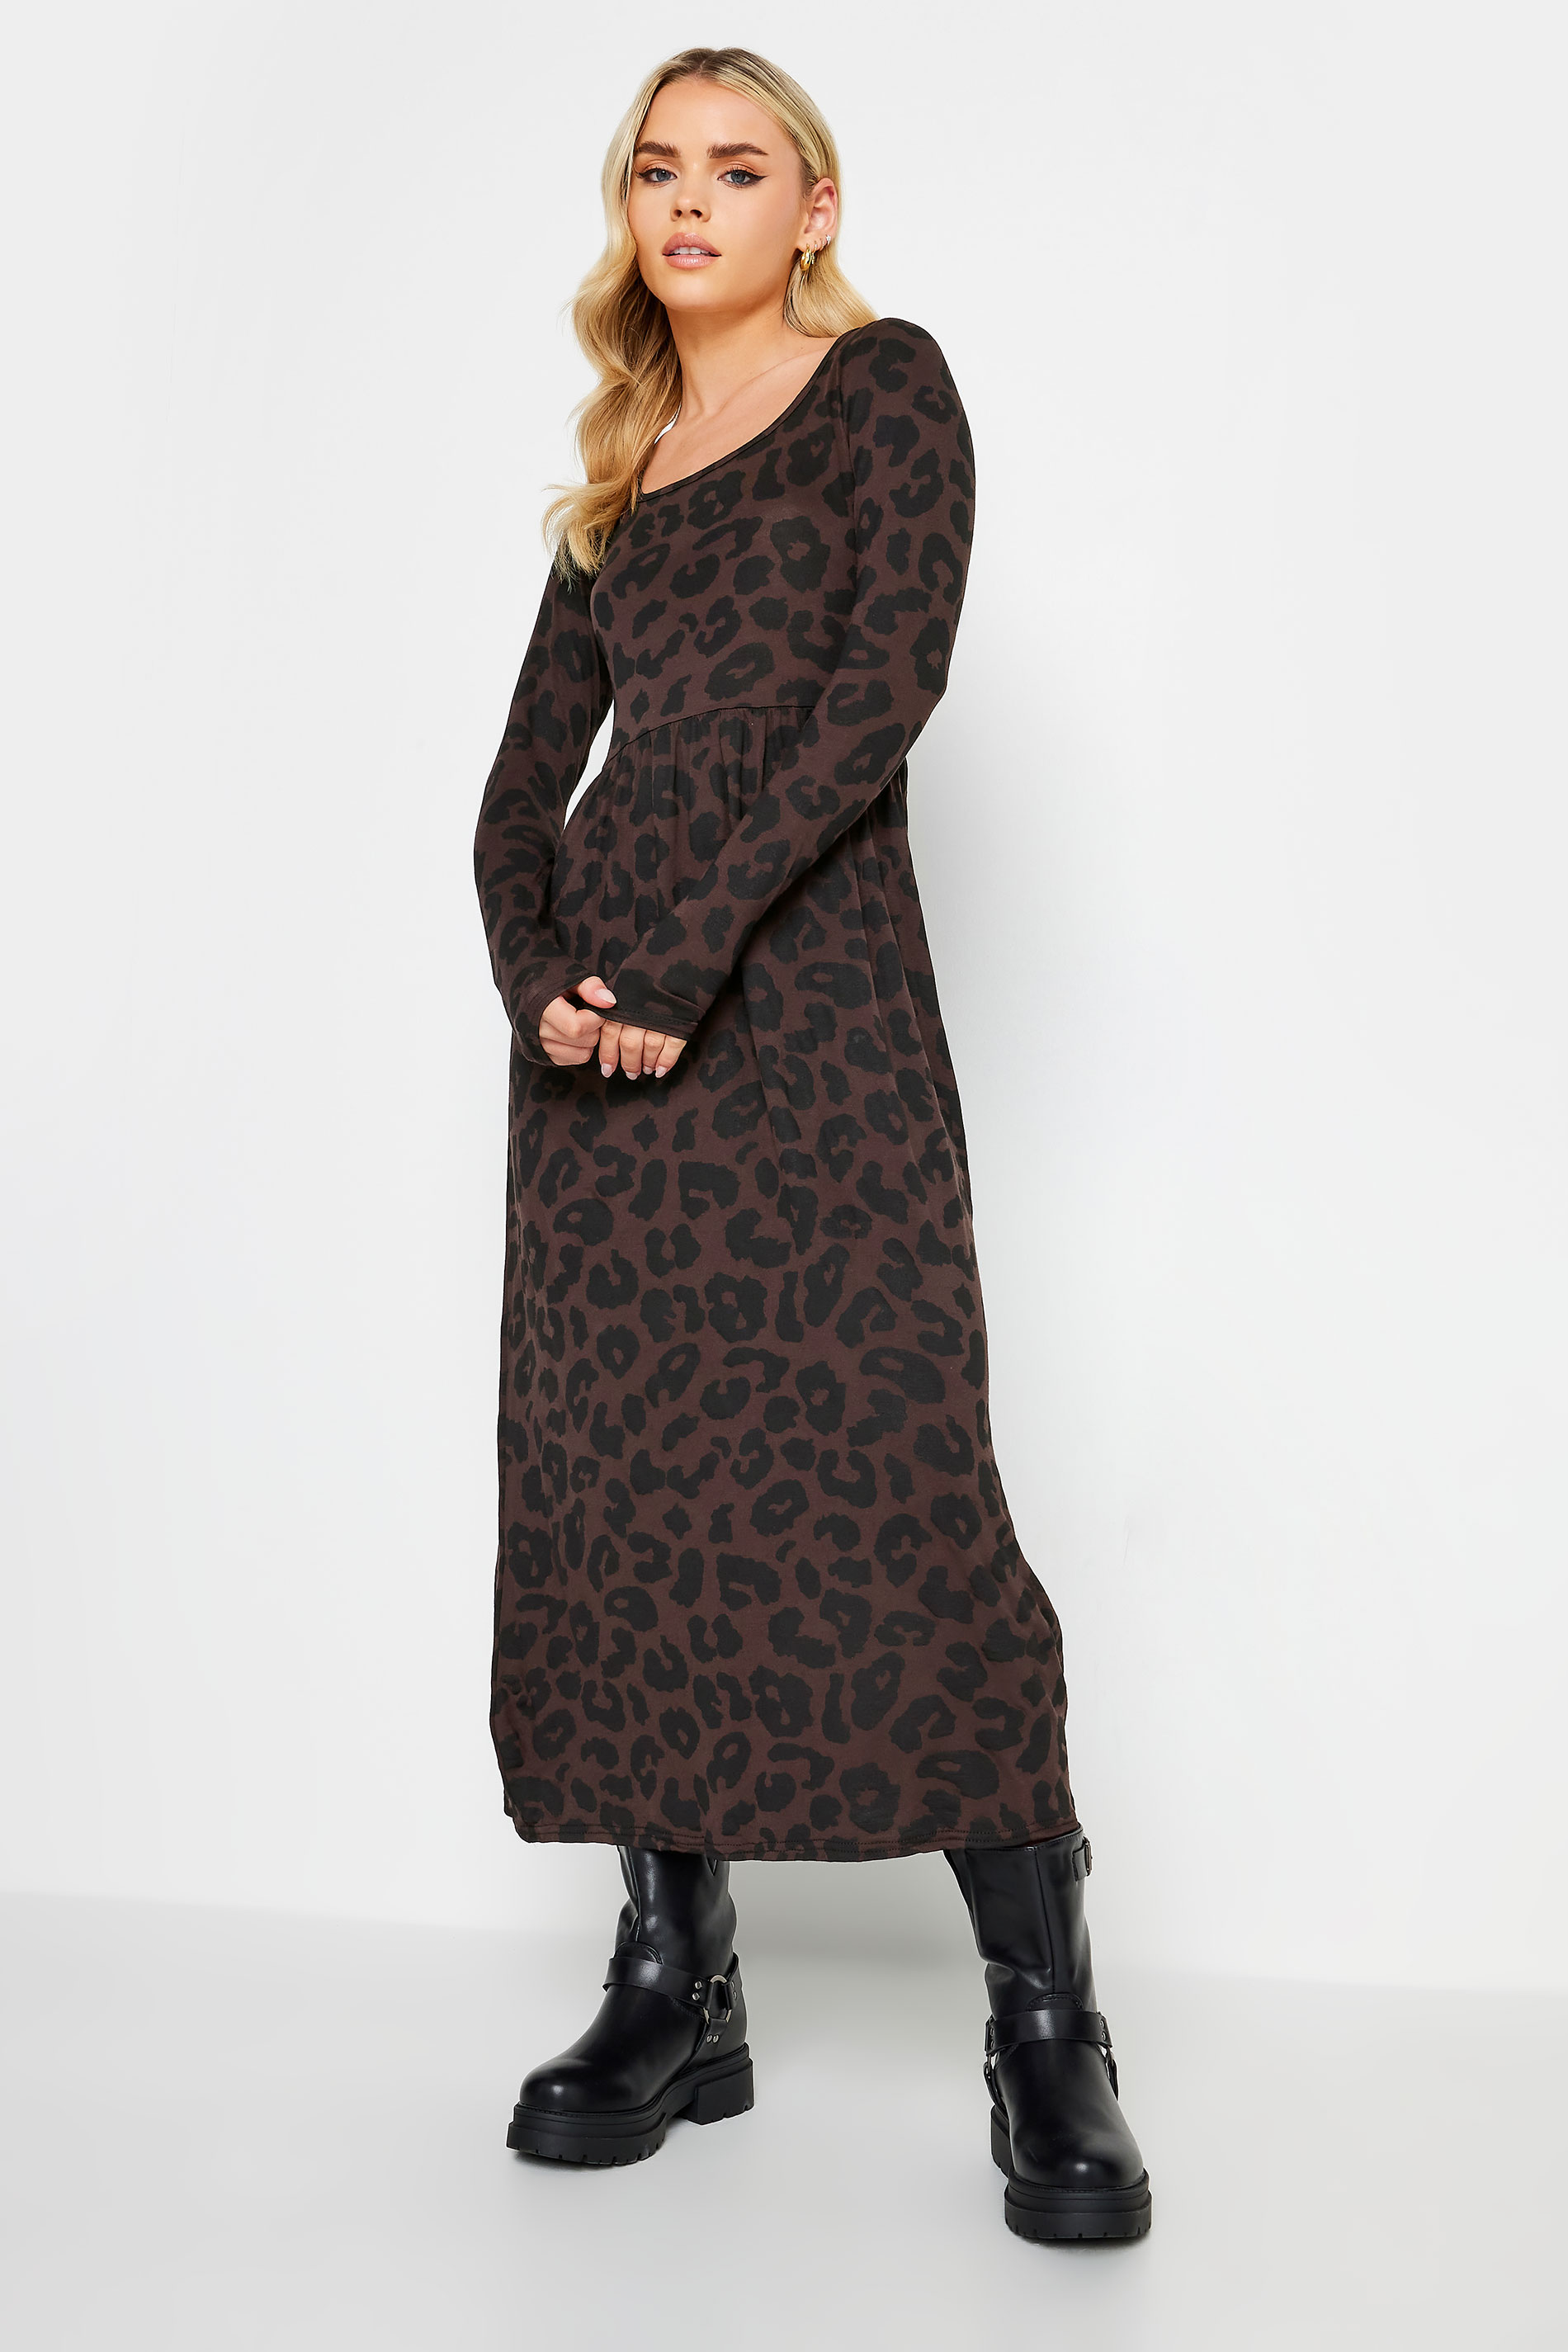 PixieGirl Petite Brown Leopard Print Long Sleeve Midi Dress | PixieGirl